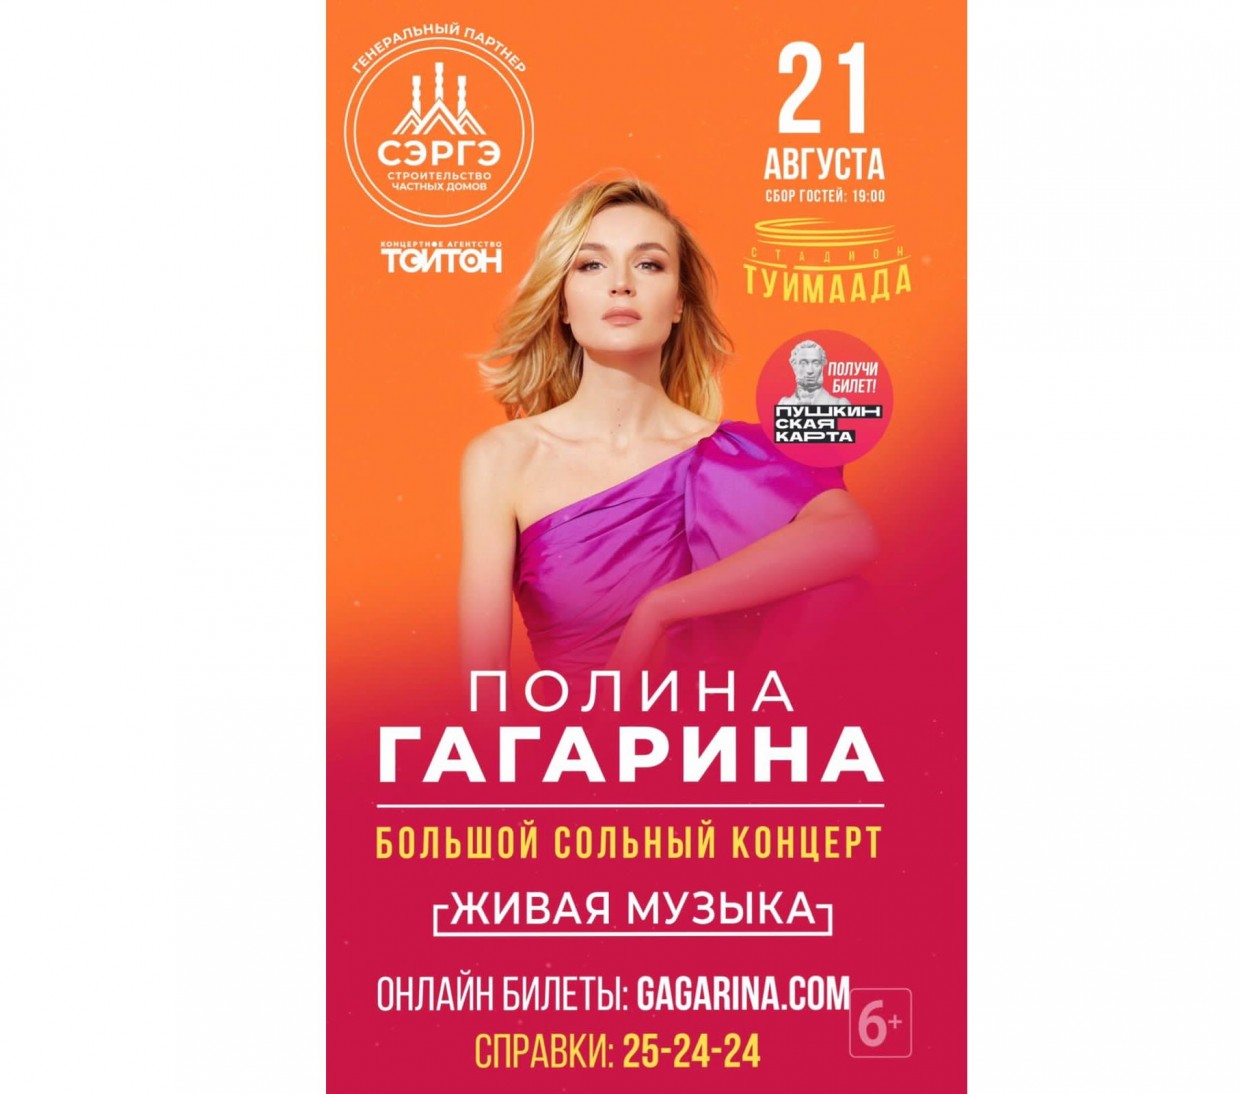 На концерт Полины Гагариной в Якутске - по Пушкинской карте!